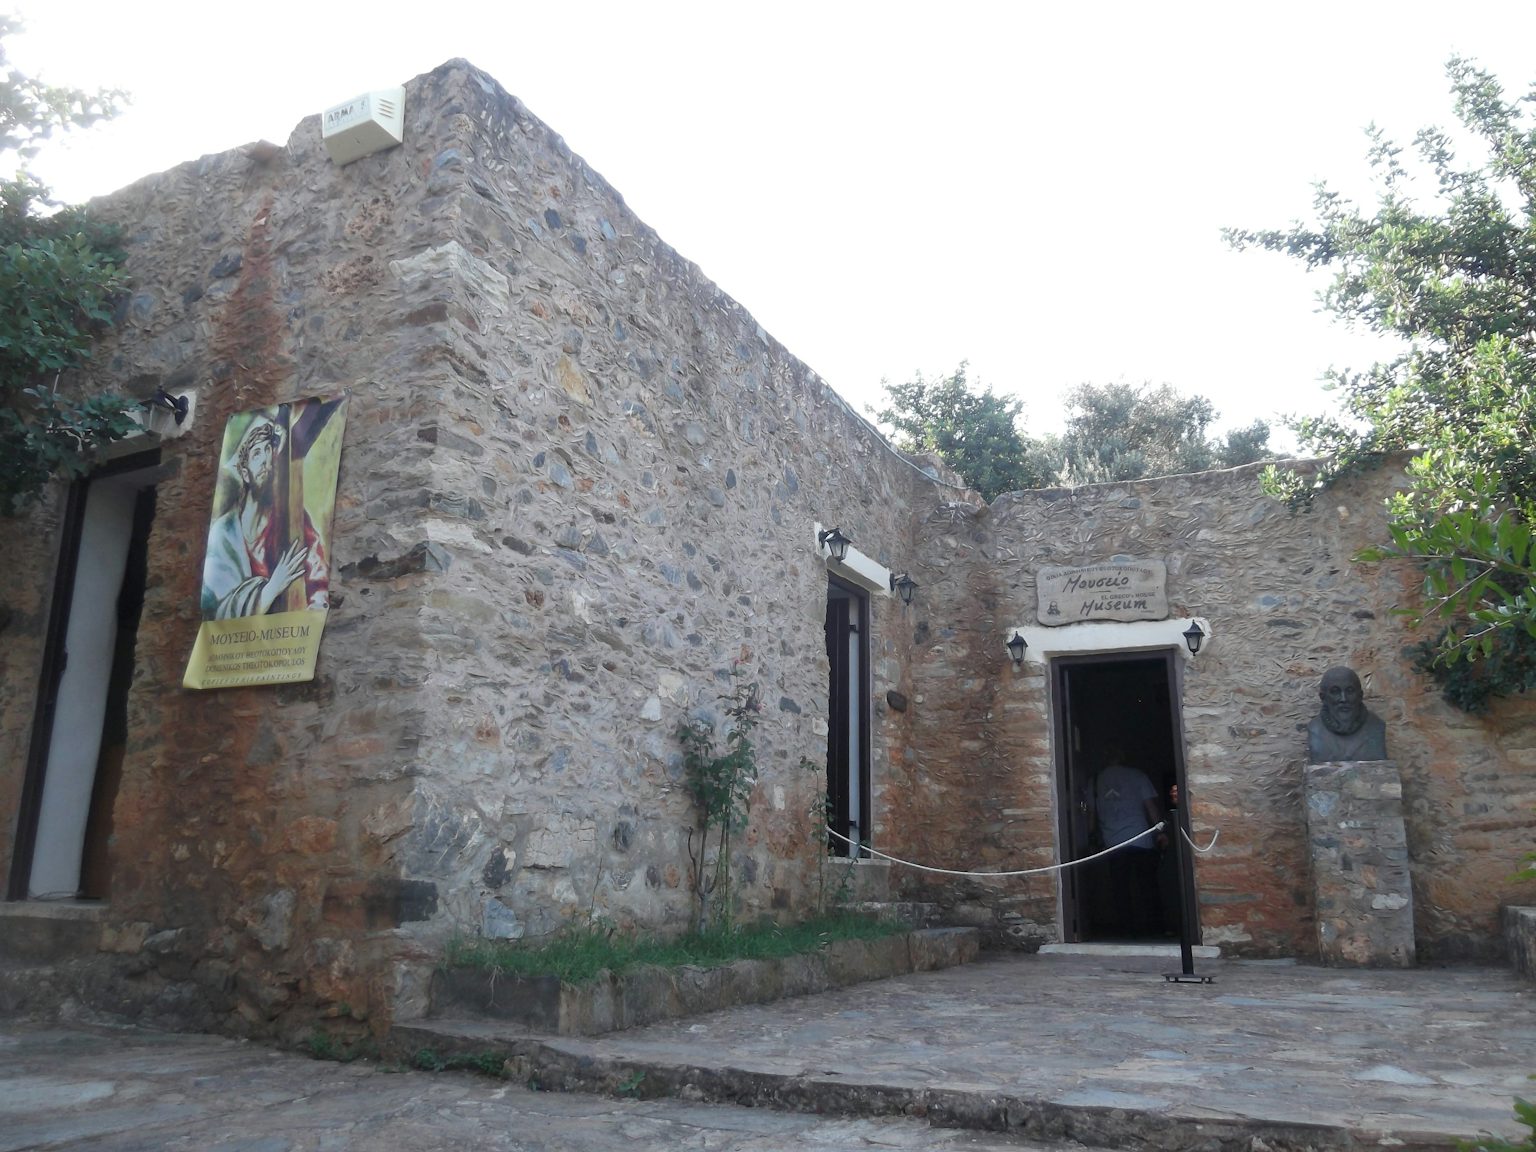 El Greco Museum